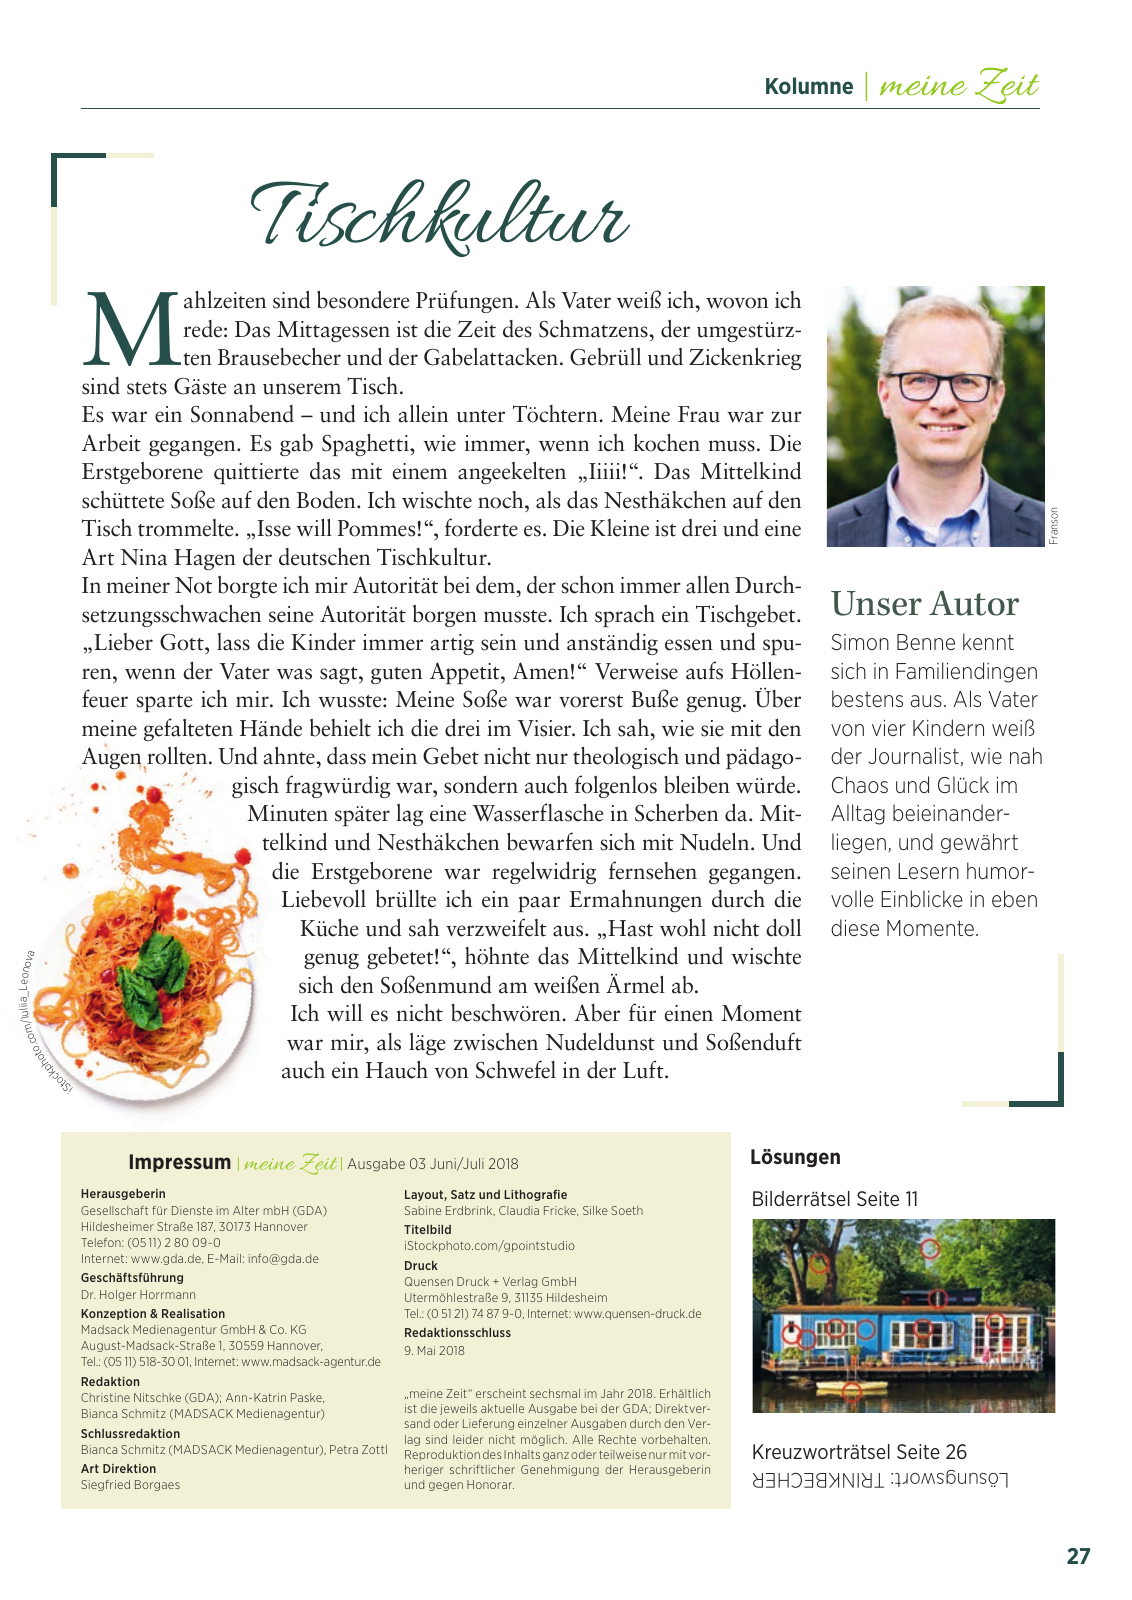 Vorschau 2018_GDA03_Wiesbaden Seite 27